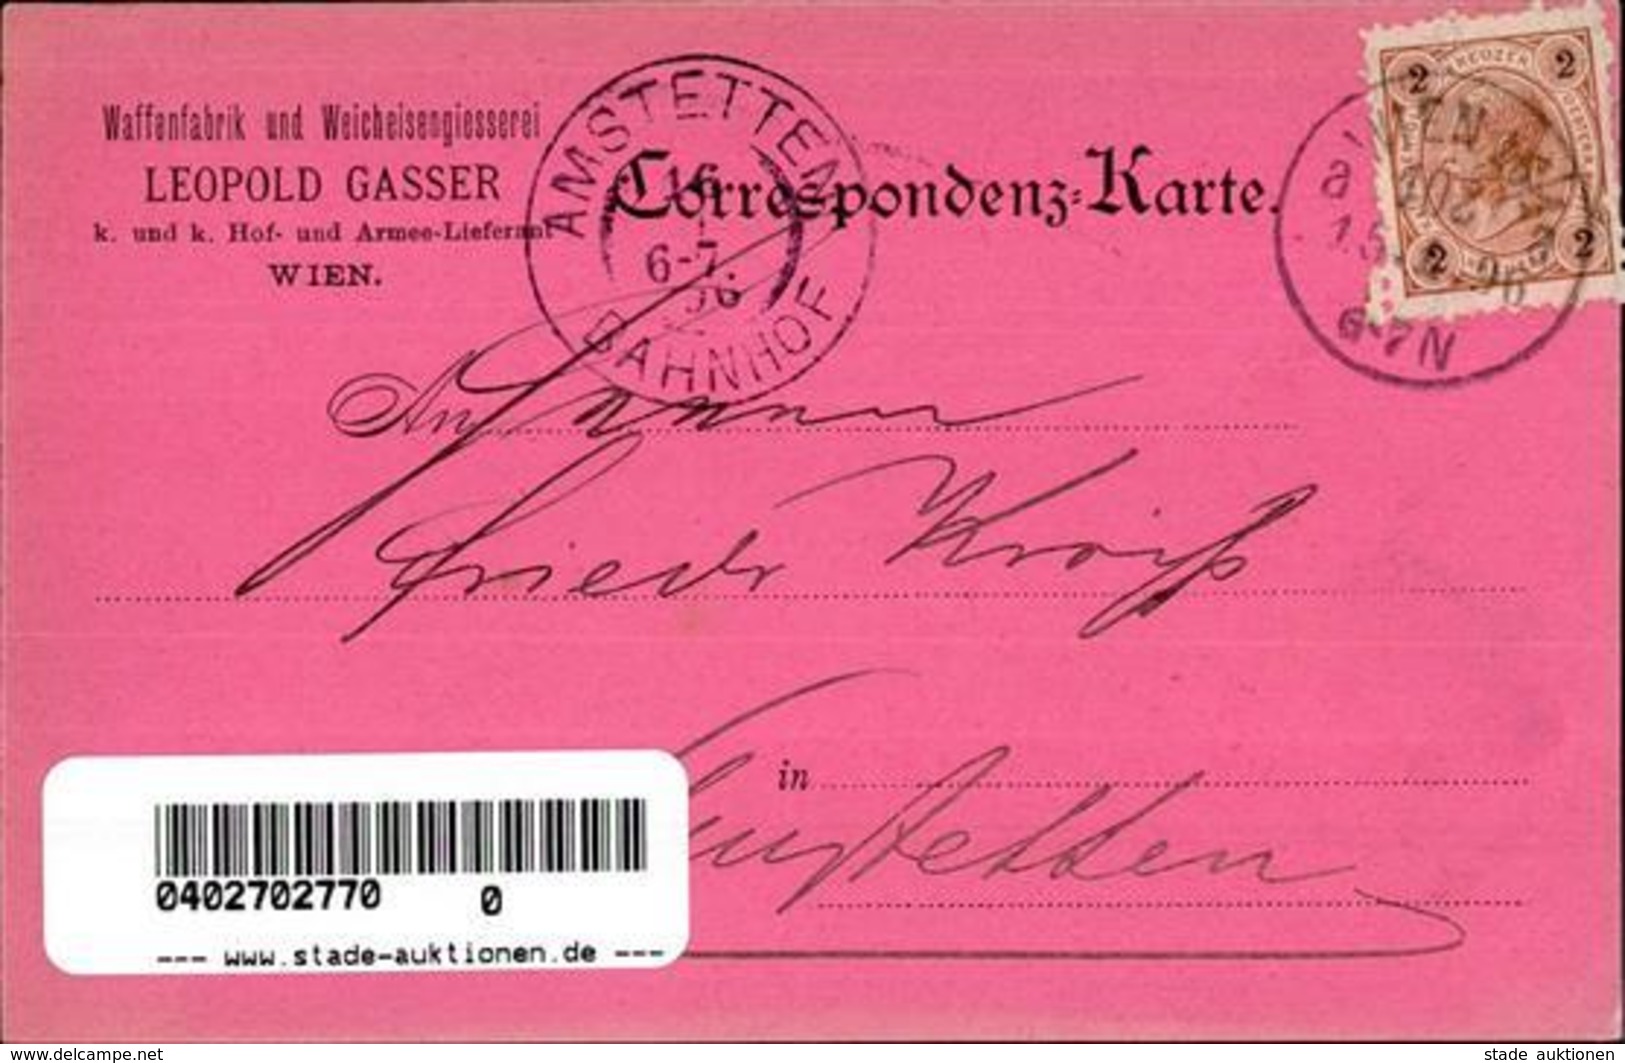 Waffe Wien (1010) Österreich Waffenfabrik Und Weicheisengießerei Leopold Gasser 1896 I-II - Uniformen